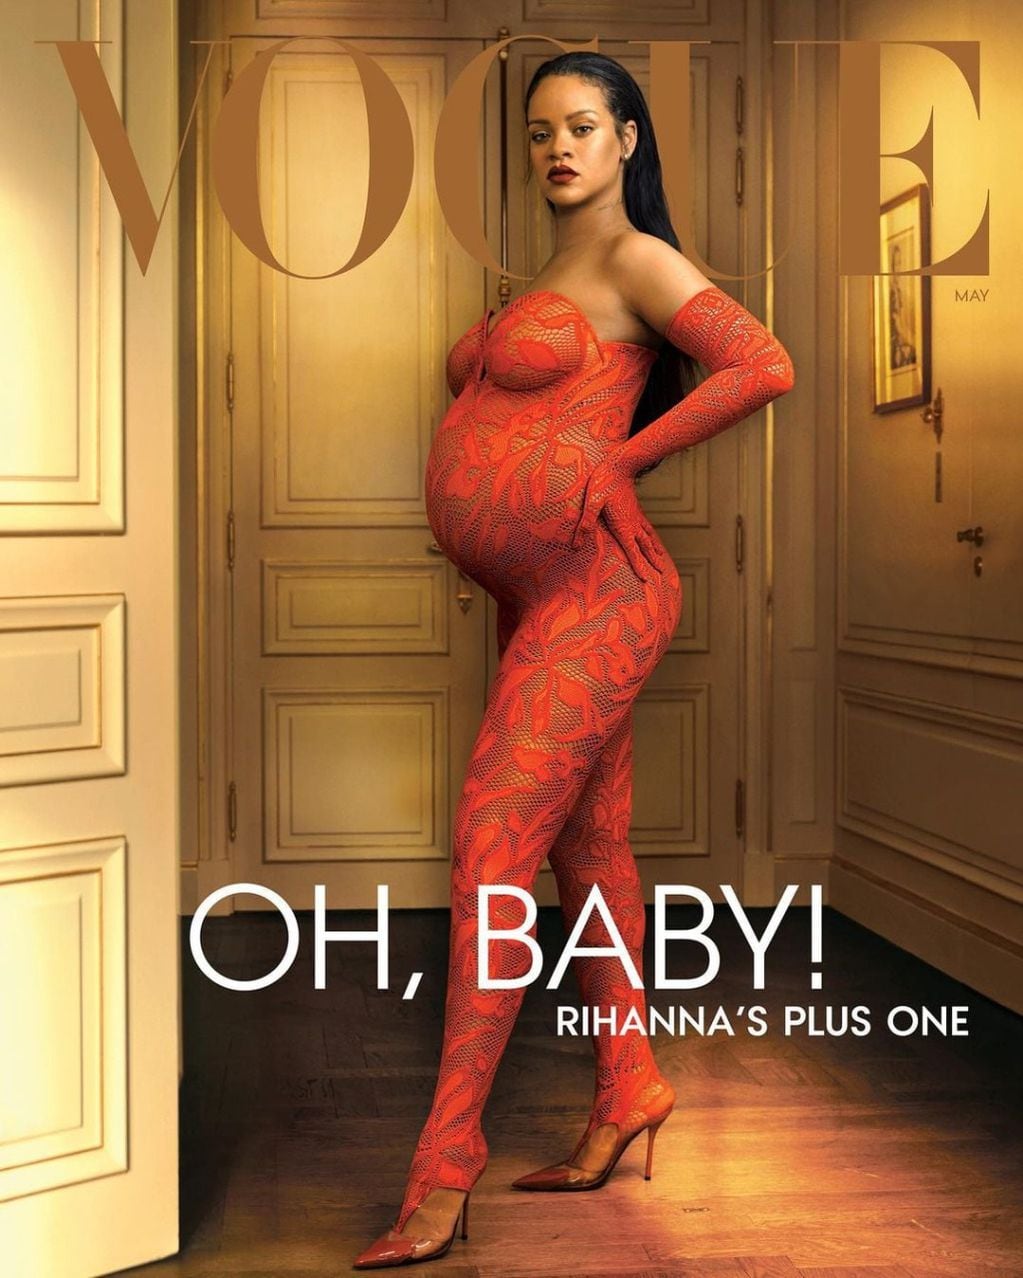 Rihanna embarazada fue la tapa de mayo 2022 de Vogue.